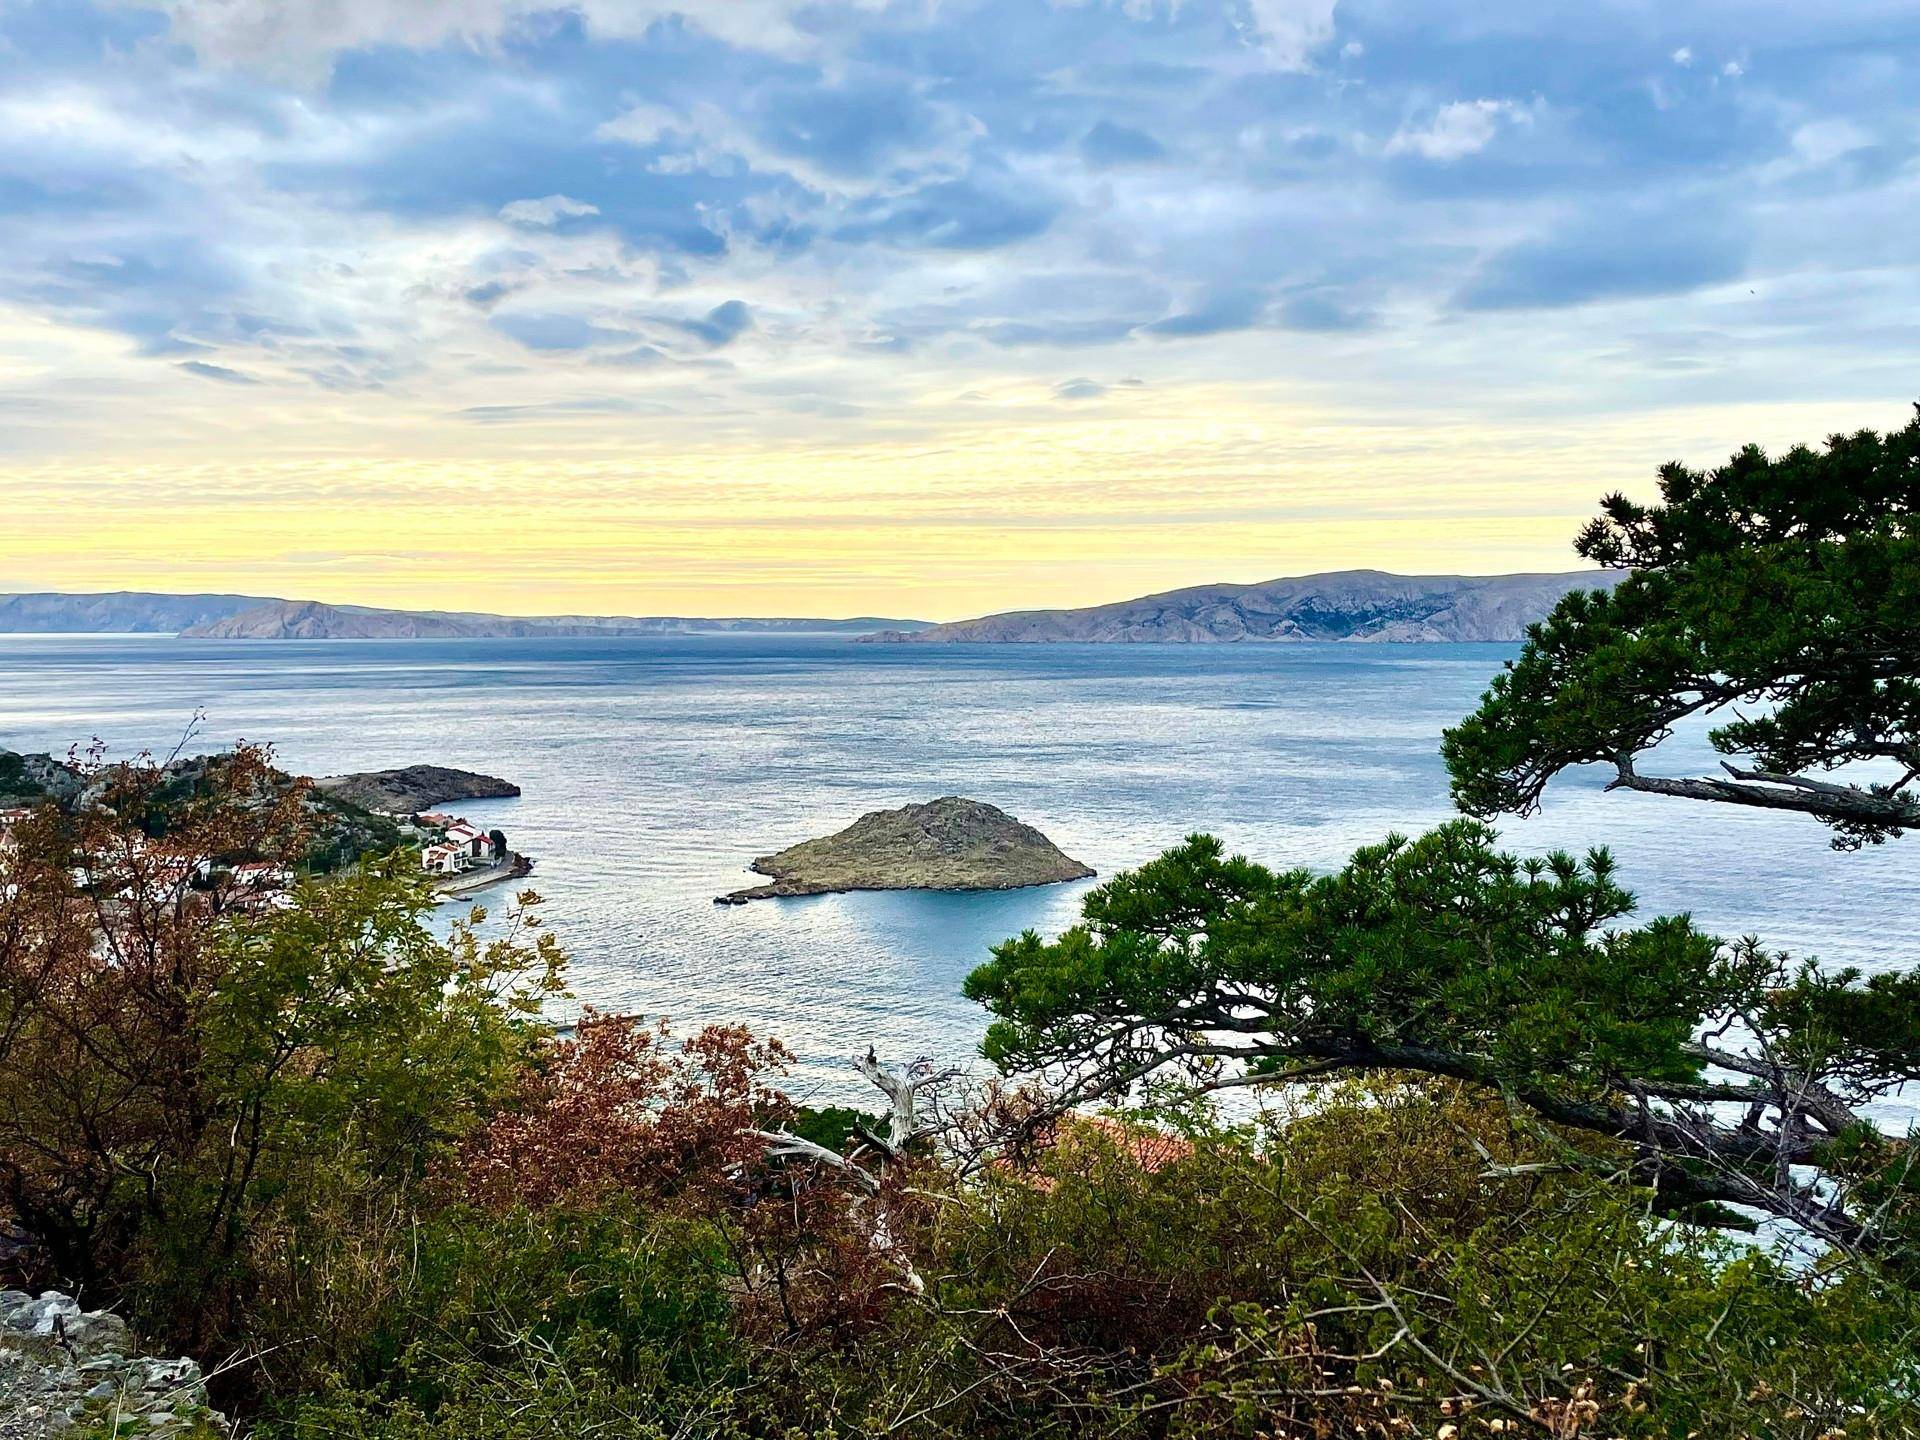 Blick auf die vorgelagerte Insel Otocic Lisac